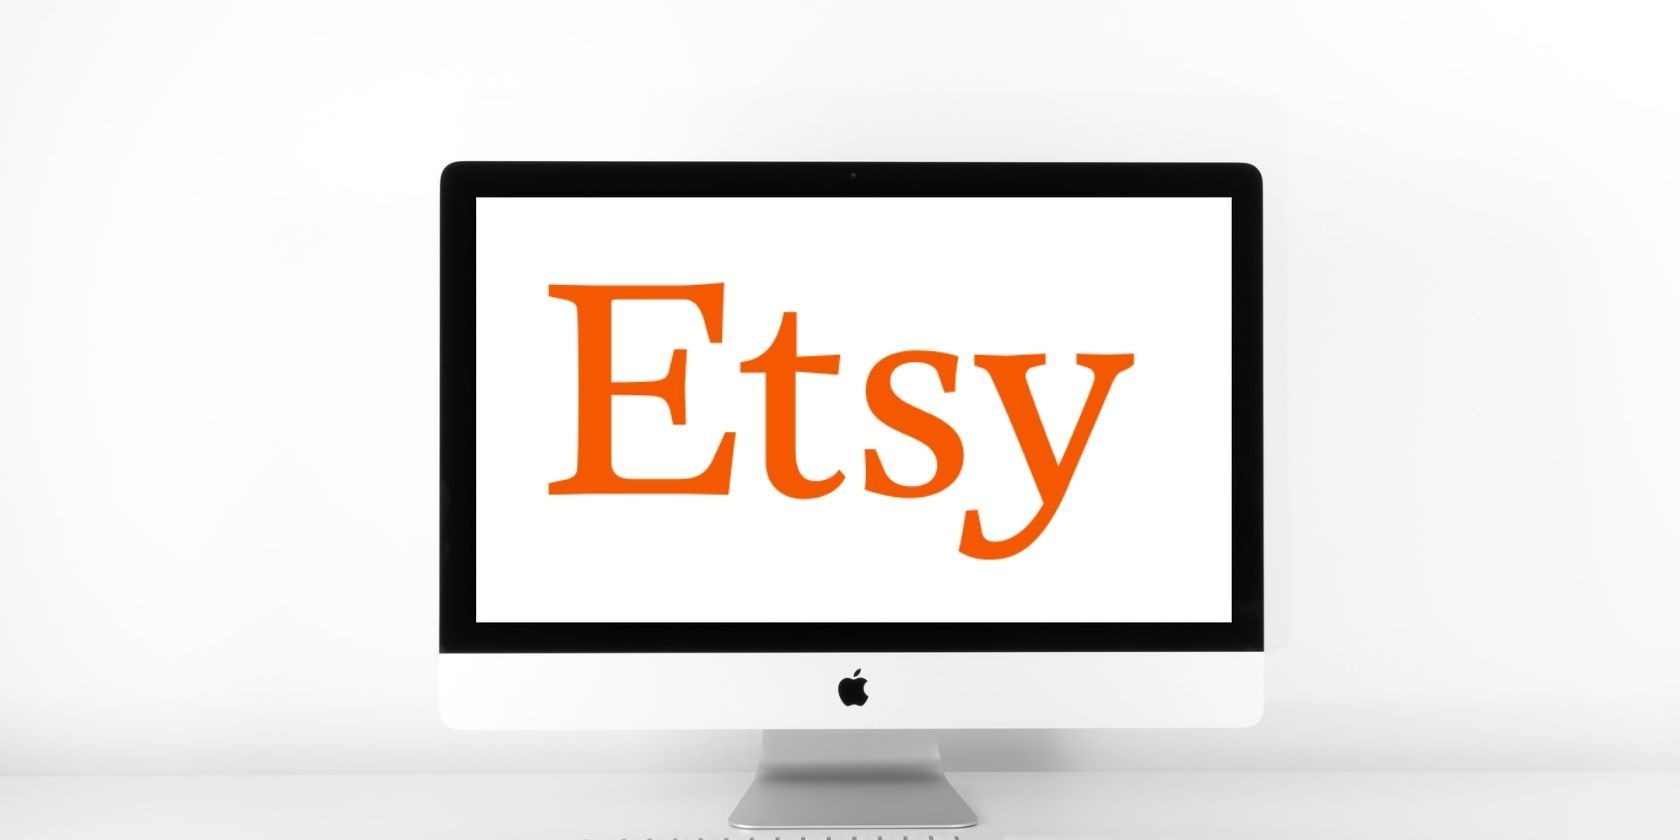 etsy-on-desktop-screen